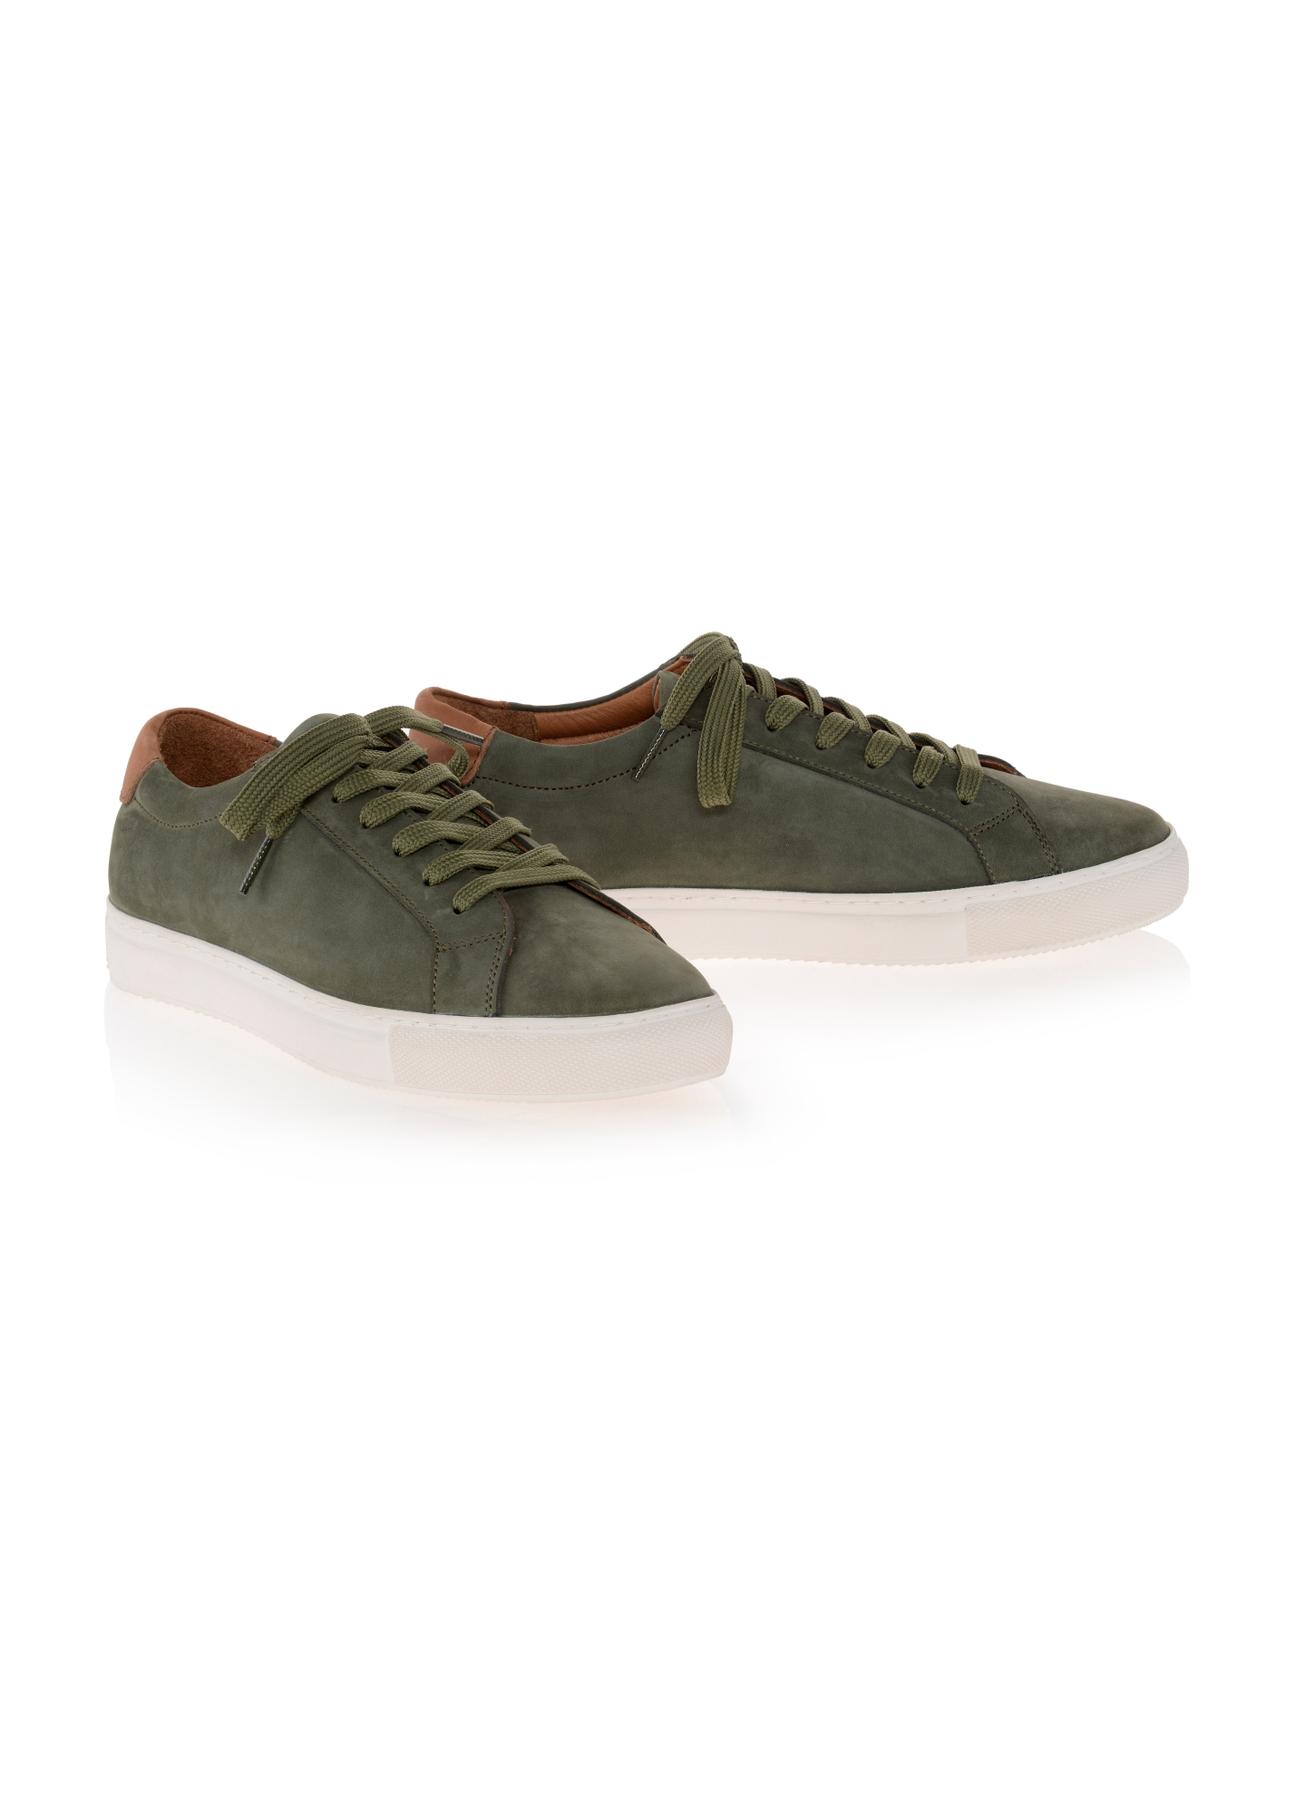 Zielone skórzane sneakersy męskie BUTYM-0438-54(W23)